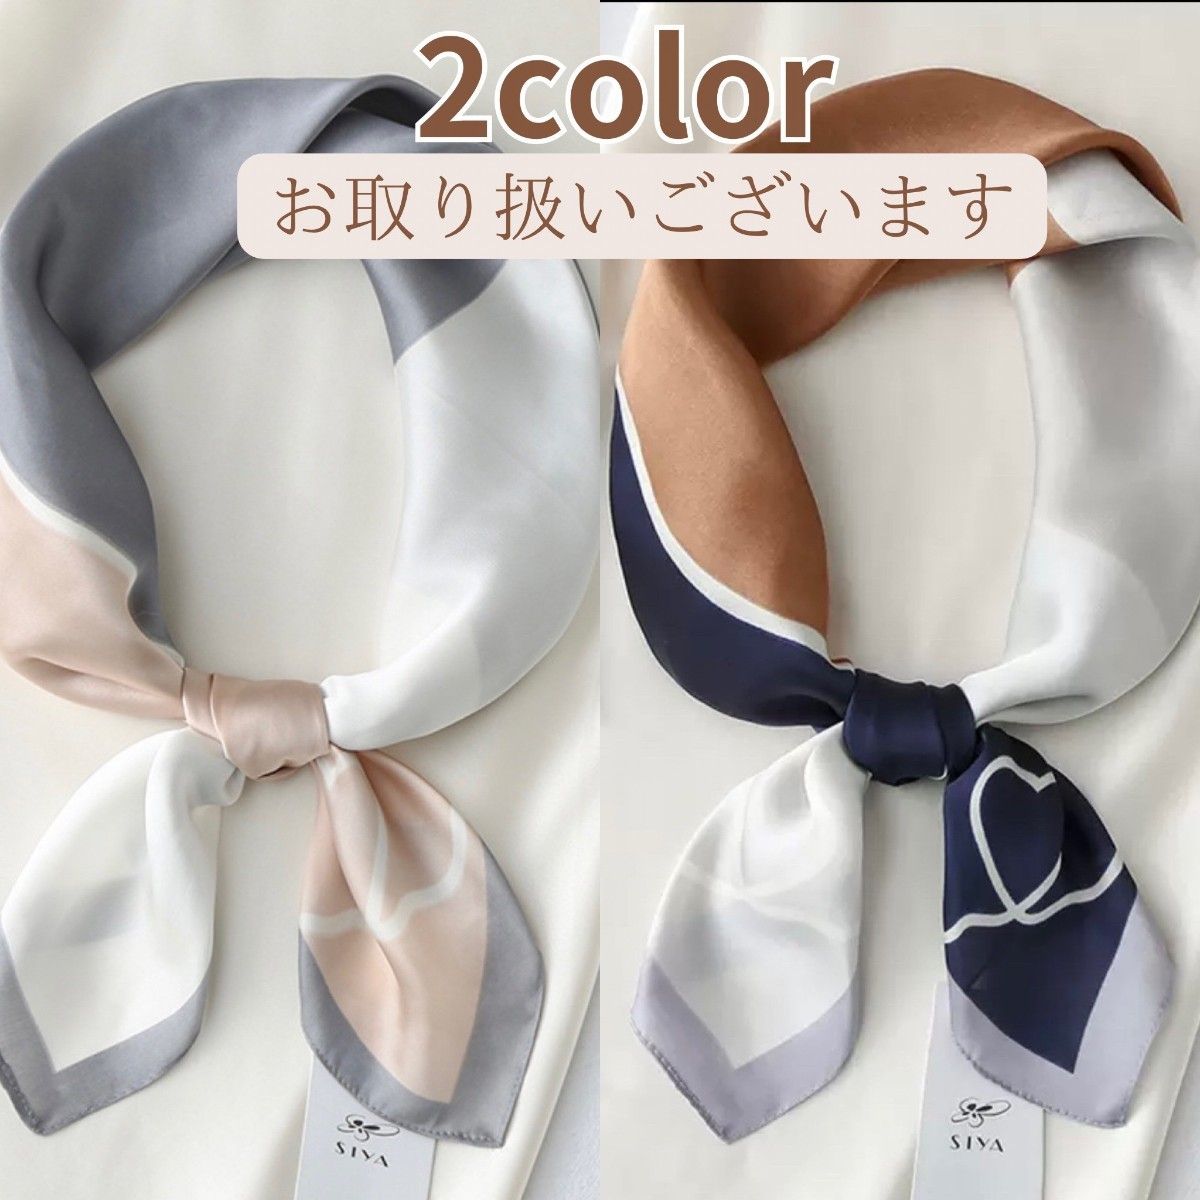 スカーフ　70×70 正方形　ネッカチーフ シルク風 バンダナ カジュアル